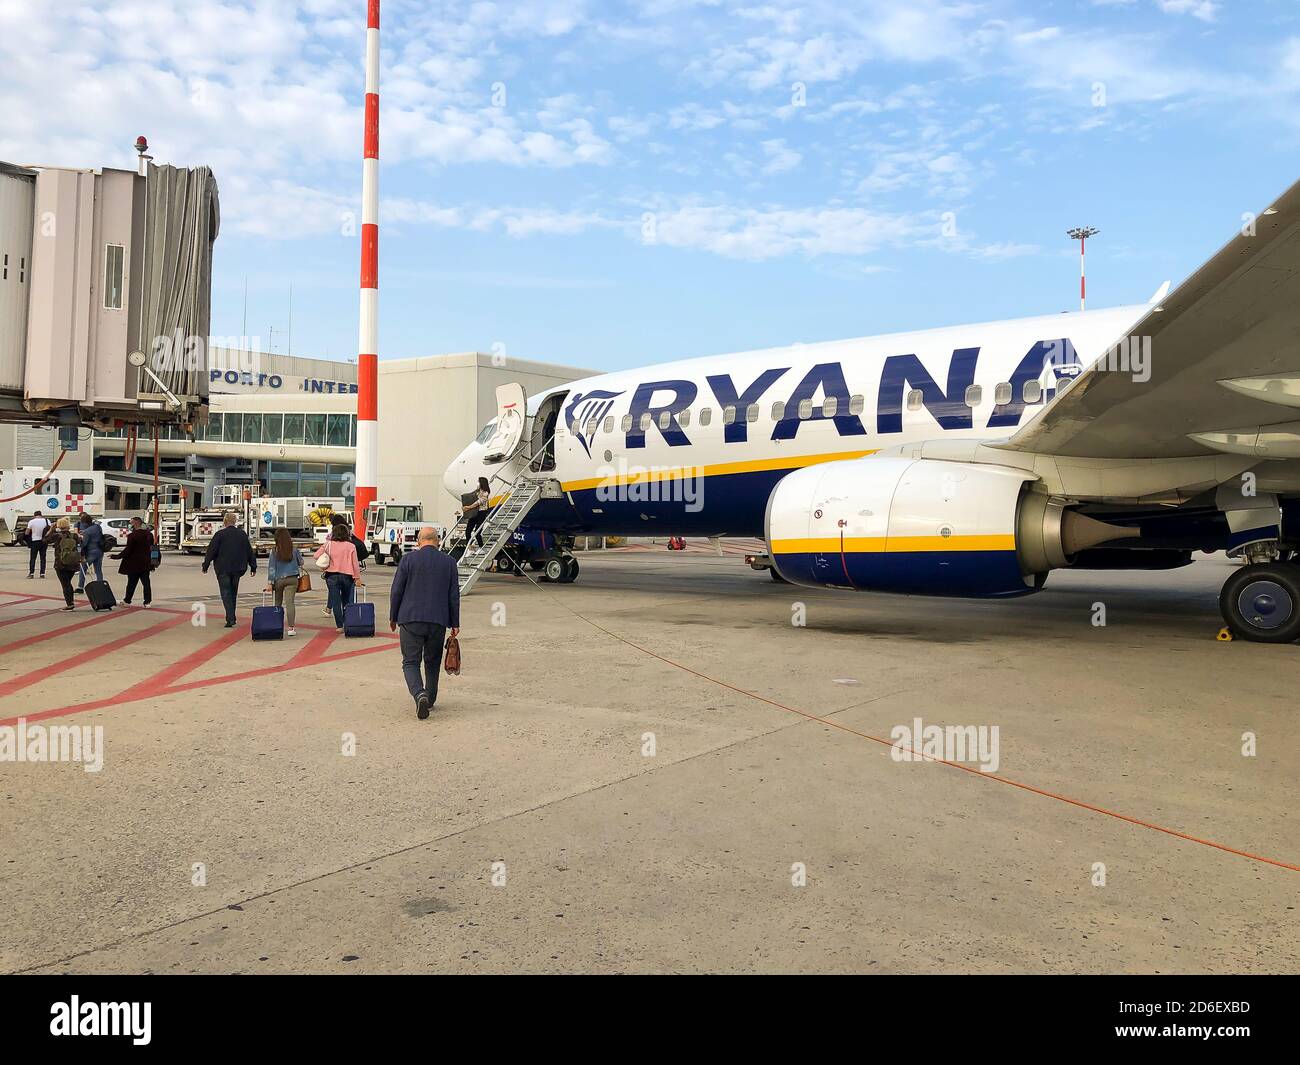 Palerme, Italie - 23 septembre 2020 : Boeing de la compagnie aérienne Ryanair à bas prix dans l'aéroport Falcone Borsellino de Palerme, Punta Raisi, Sicil Banque D'Images